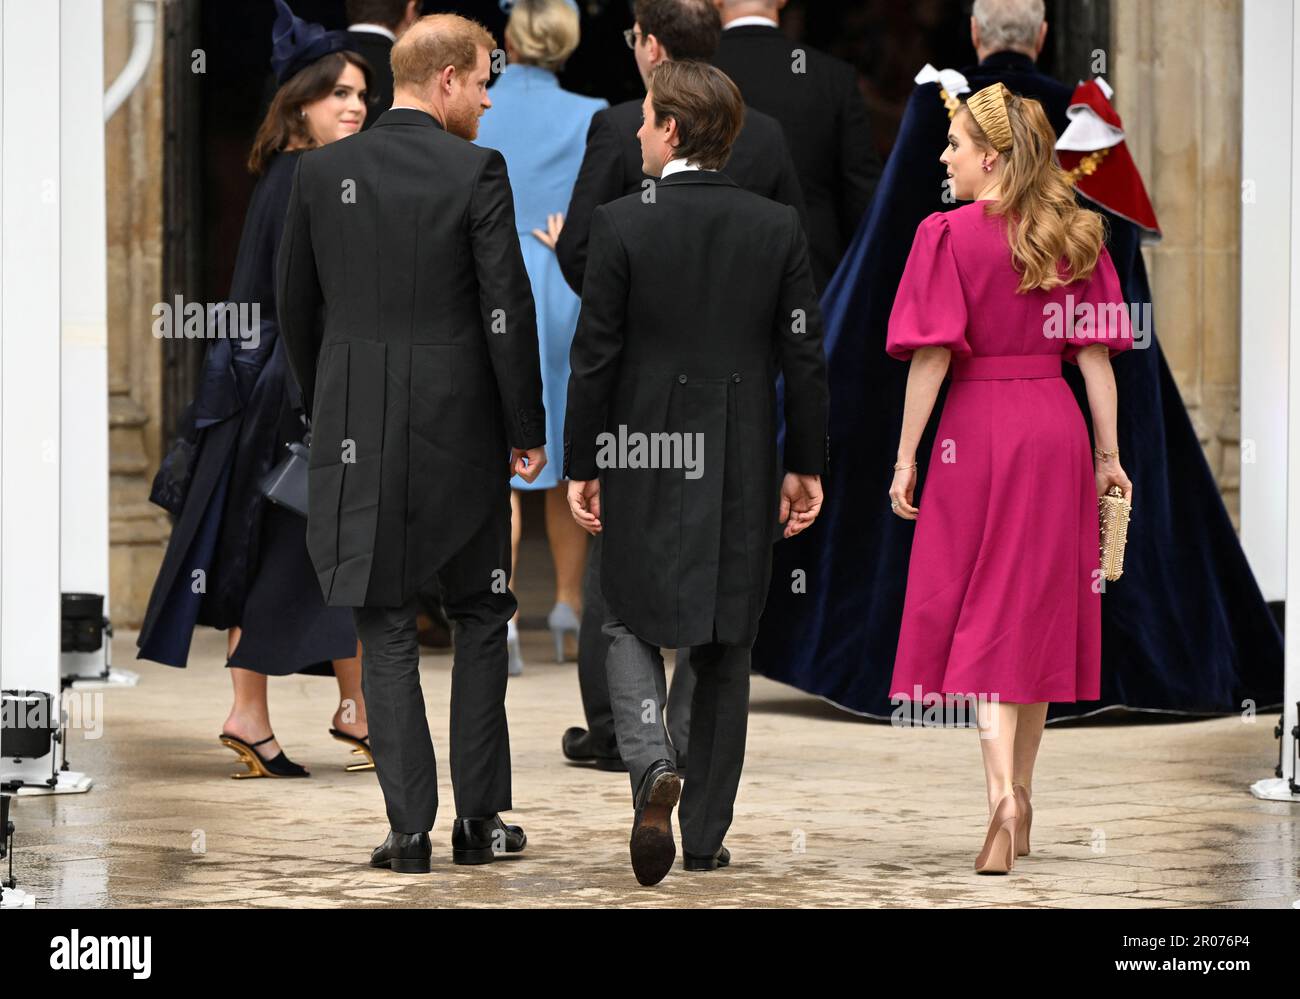 Herzog von Sussex trifft mit Prinzessin Eugenie, Prinzessin Beatrice und ihrem Ehemann Edoardo Mapelli Mozzi in der Westminster Abbey zur Krönungszeremonie von König Karl III. Und Königin Camilla im Zentrum von London ein. Foto: Samstag, 6. Mai 2023. Stockfoto